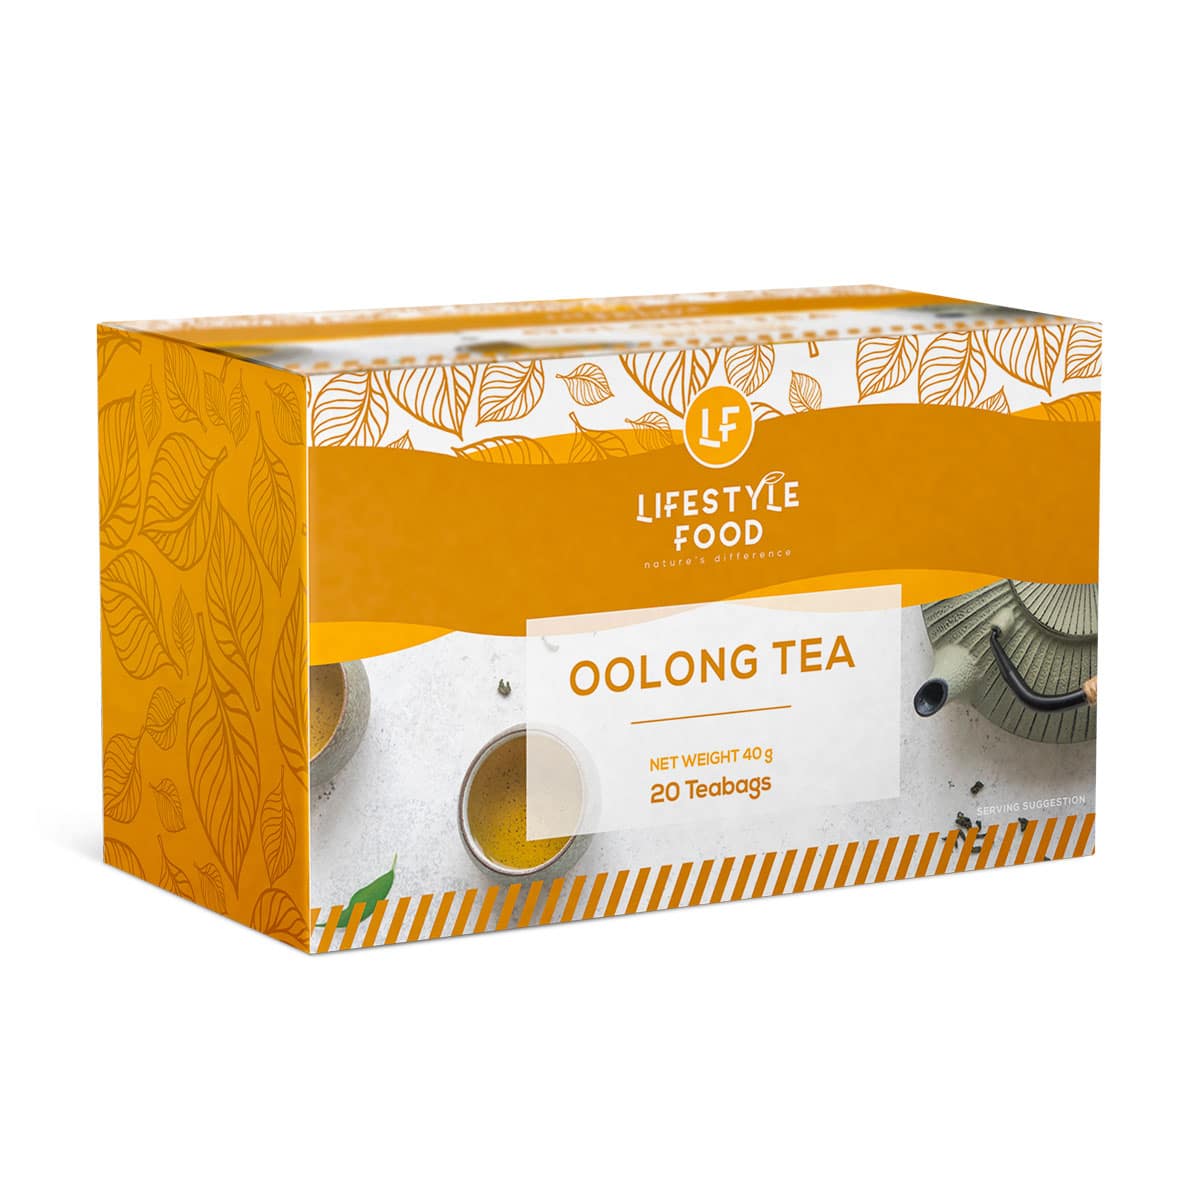 Lifestyle Food Oolong Tea - 20 Teabags